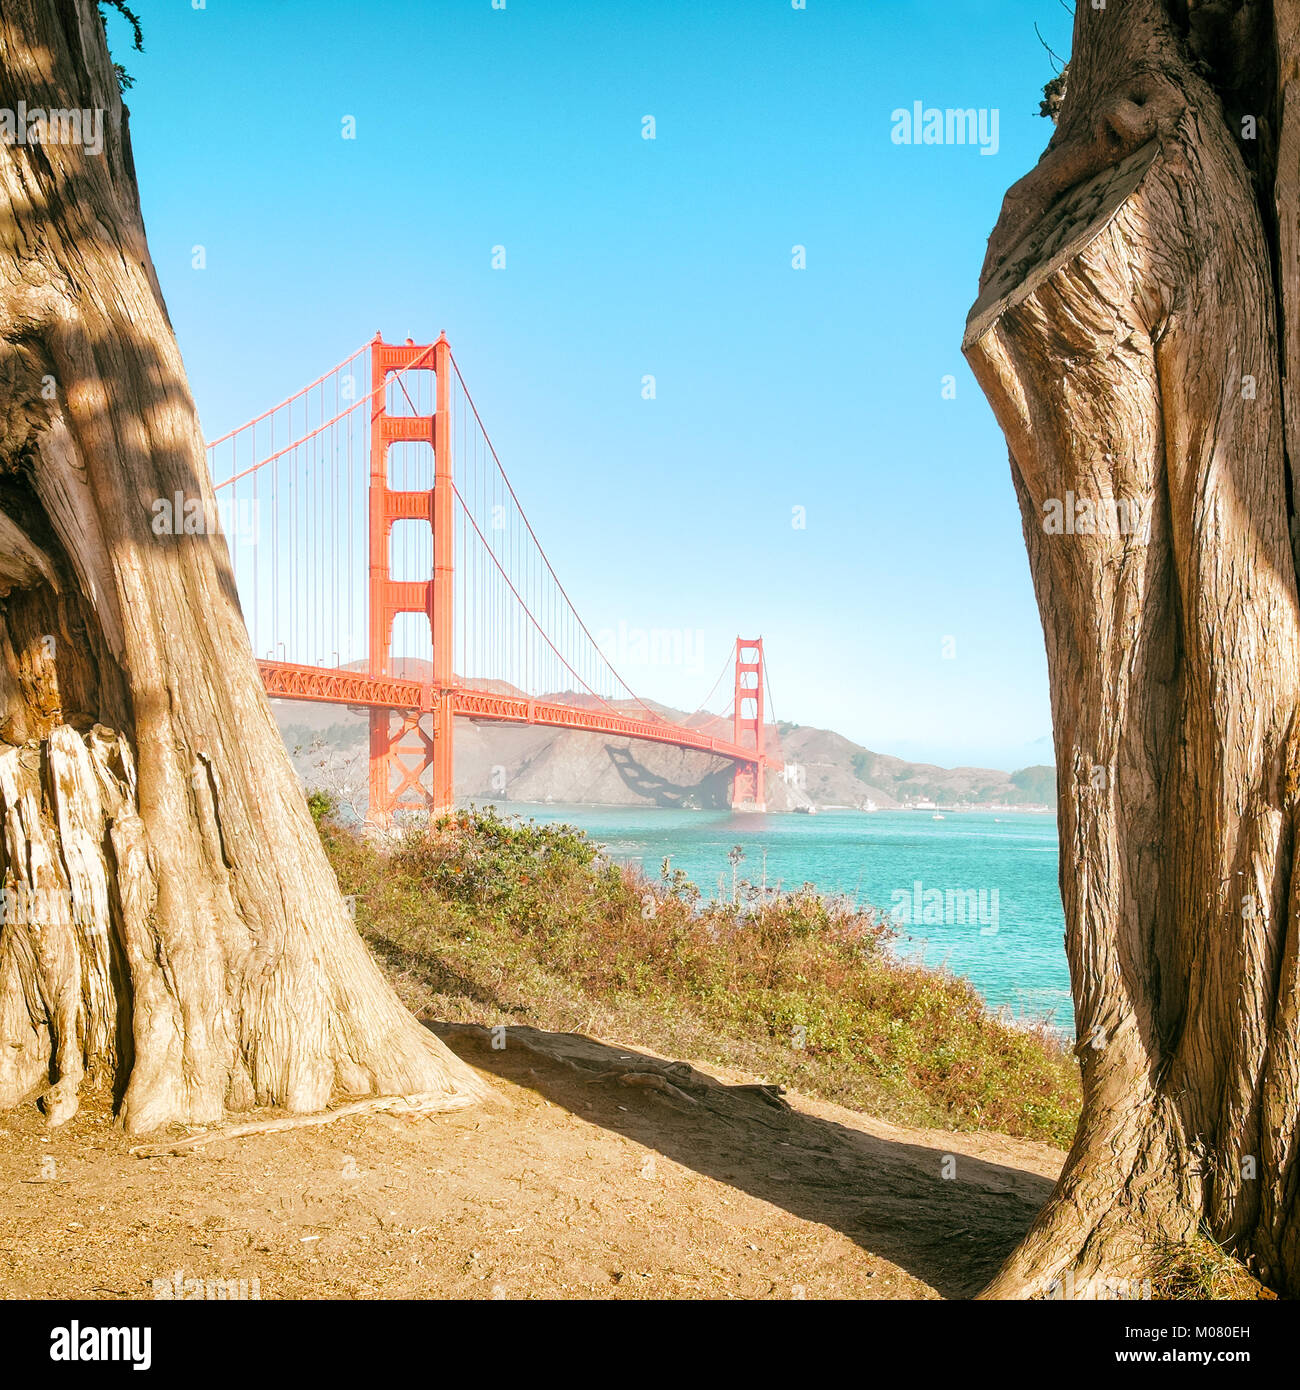 Golden Gate Bridge vista inquadrato da giganteschi eucalipti tronchi d'albero. Giornata di sole e cielo blu, vintage colore. Formato quadrato. Foto Stock